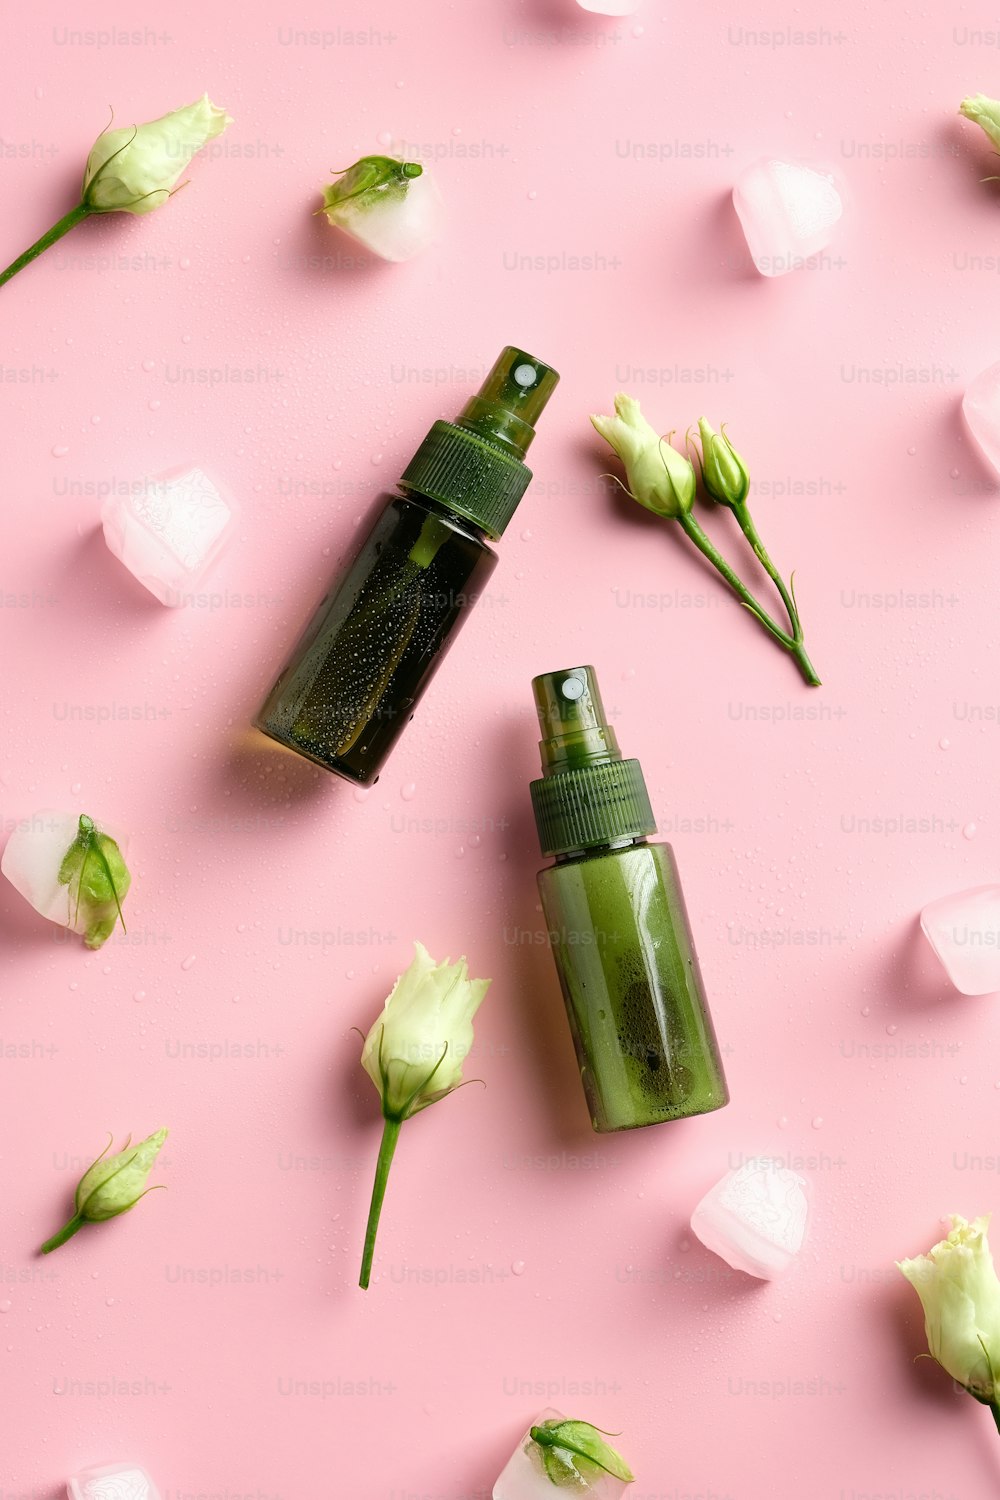 Botellas de spray verde con cubitos de hielo y flores sobre fondo rosa. Productos de belleza orgánicos naturales para el cuidado de la piel. Plano, vista superior.